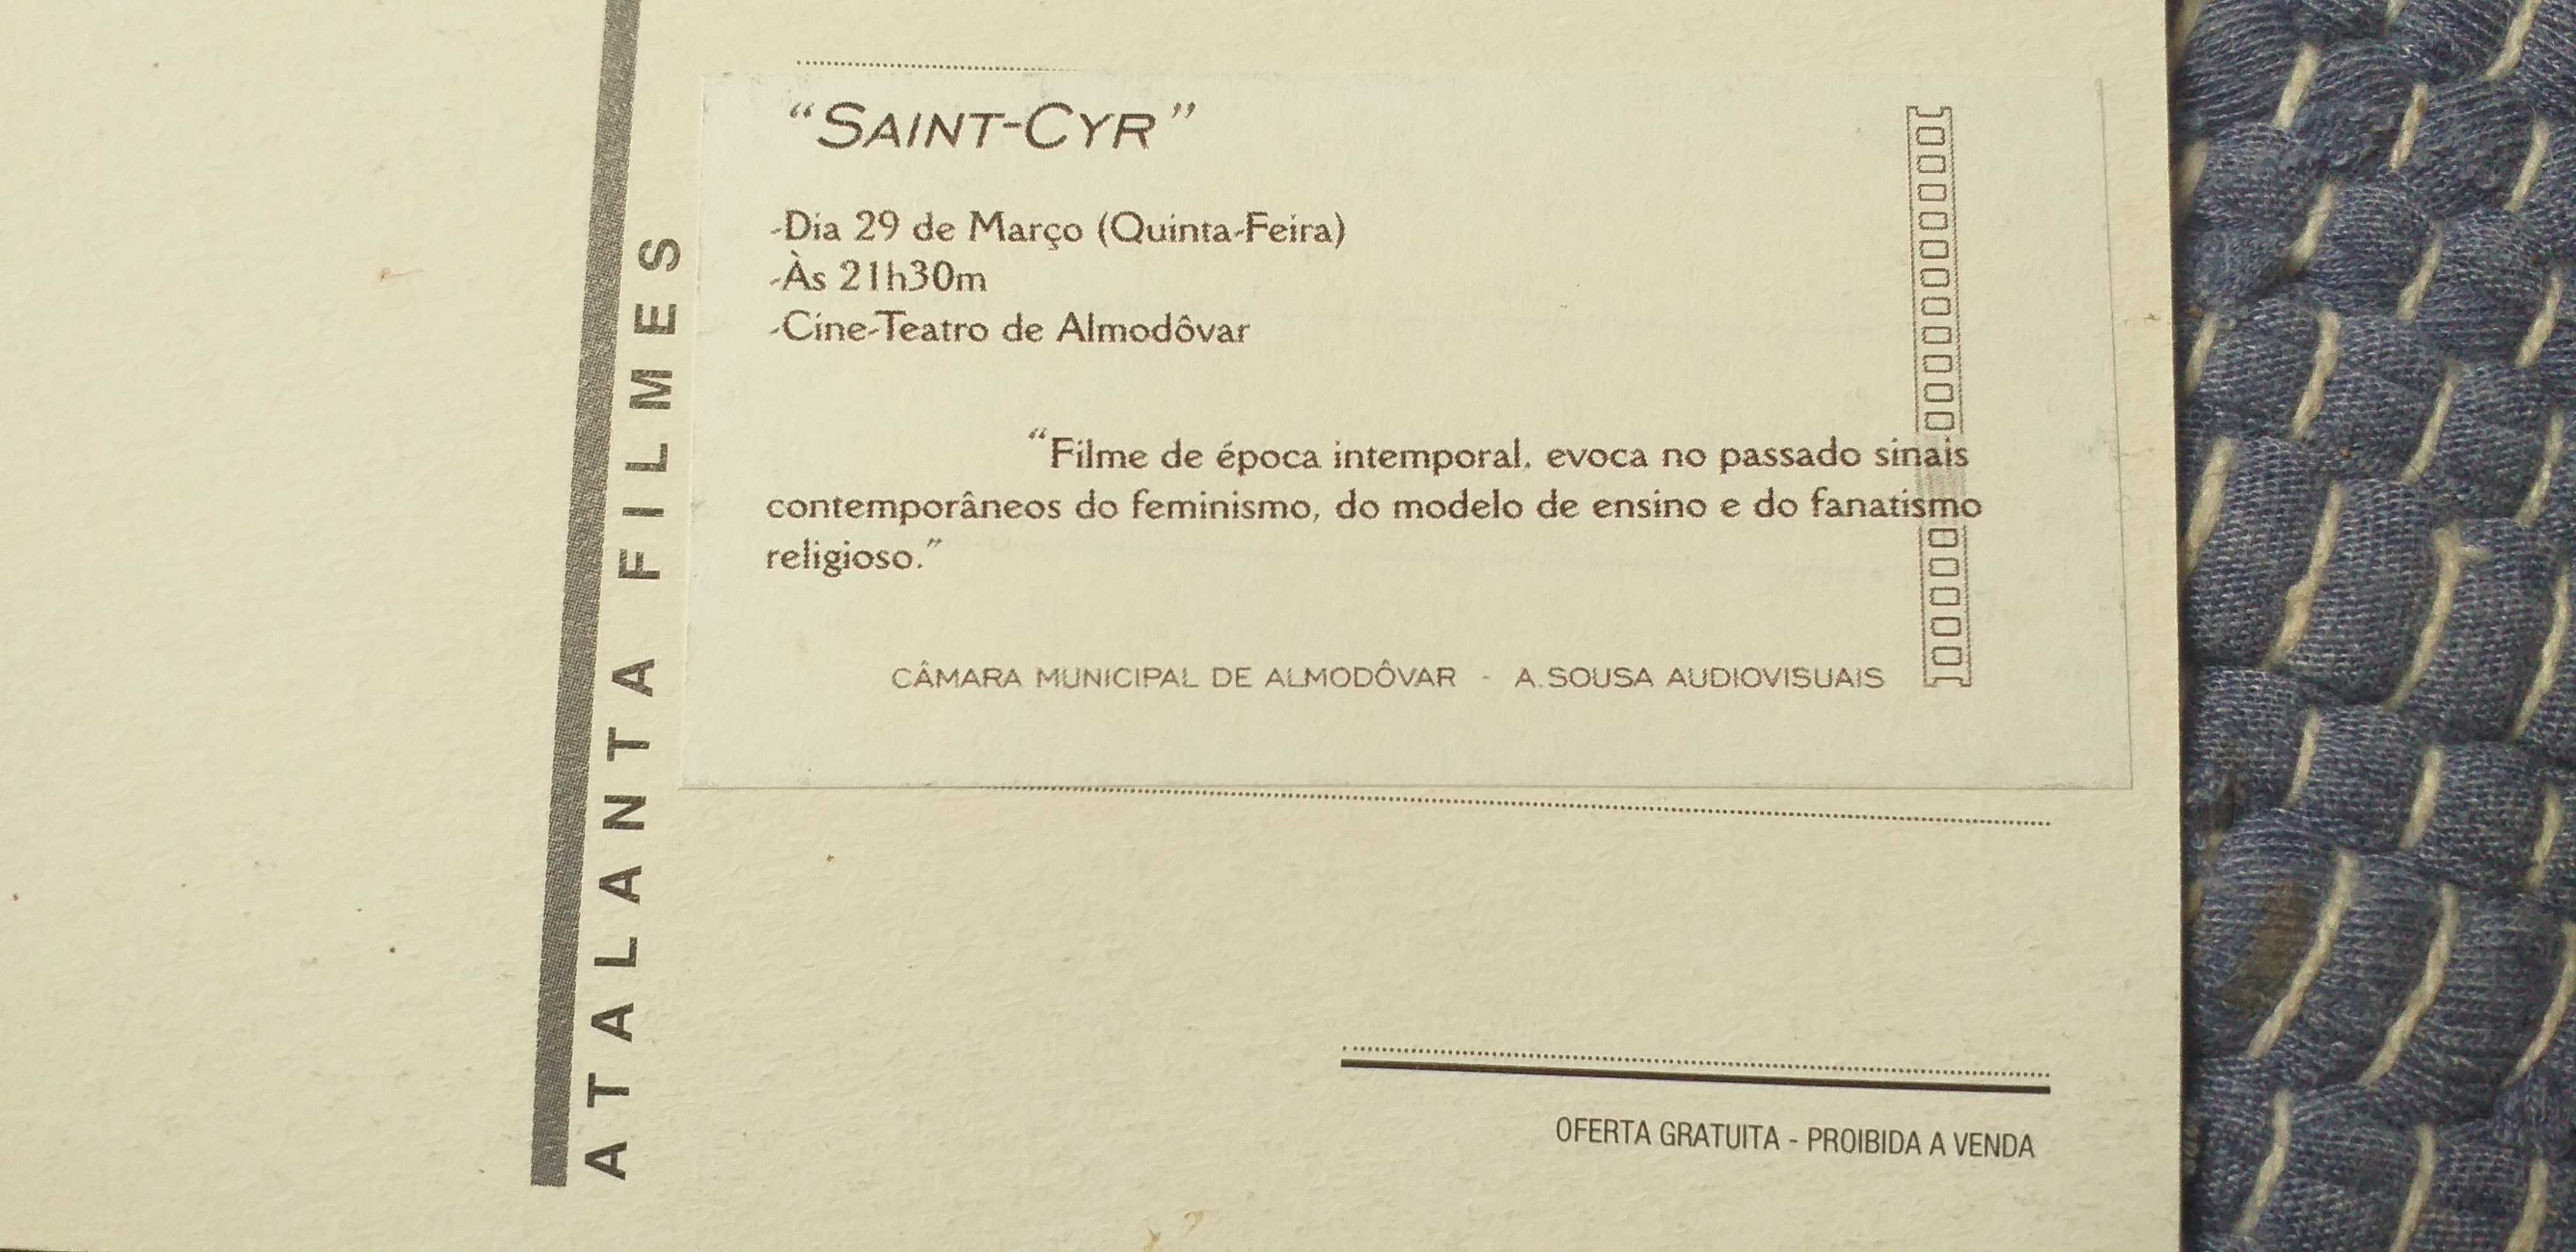 Postal do filme Saint-Cyr - portes incluidos.